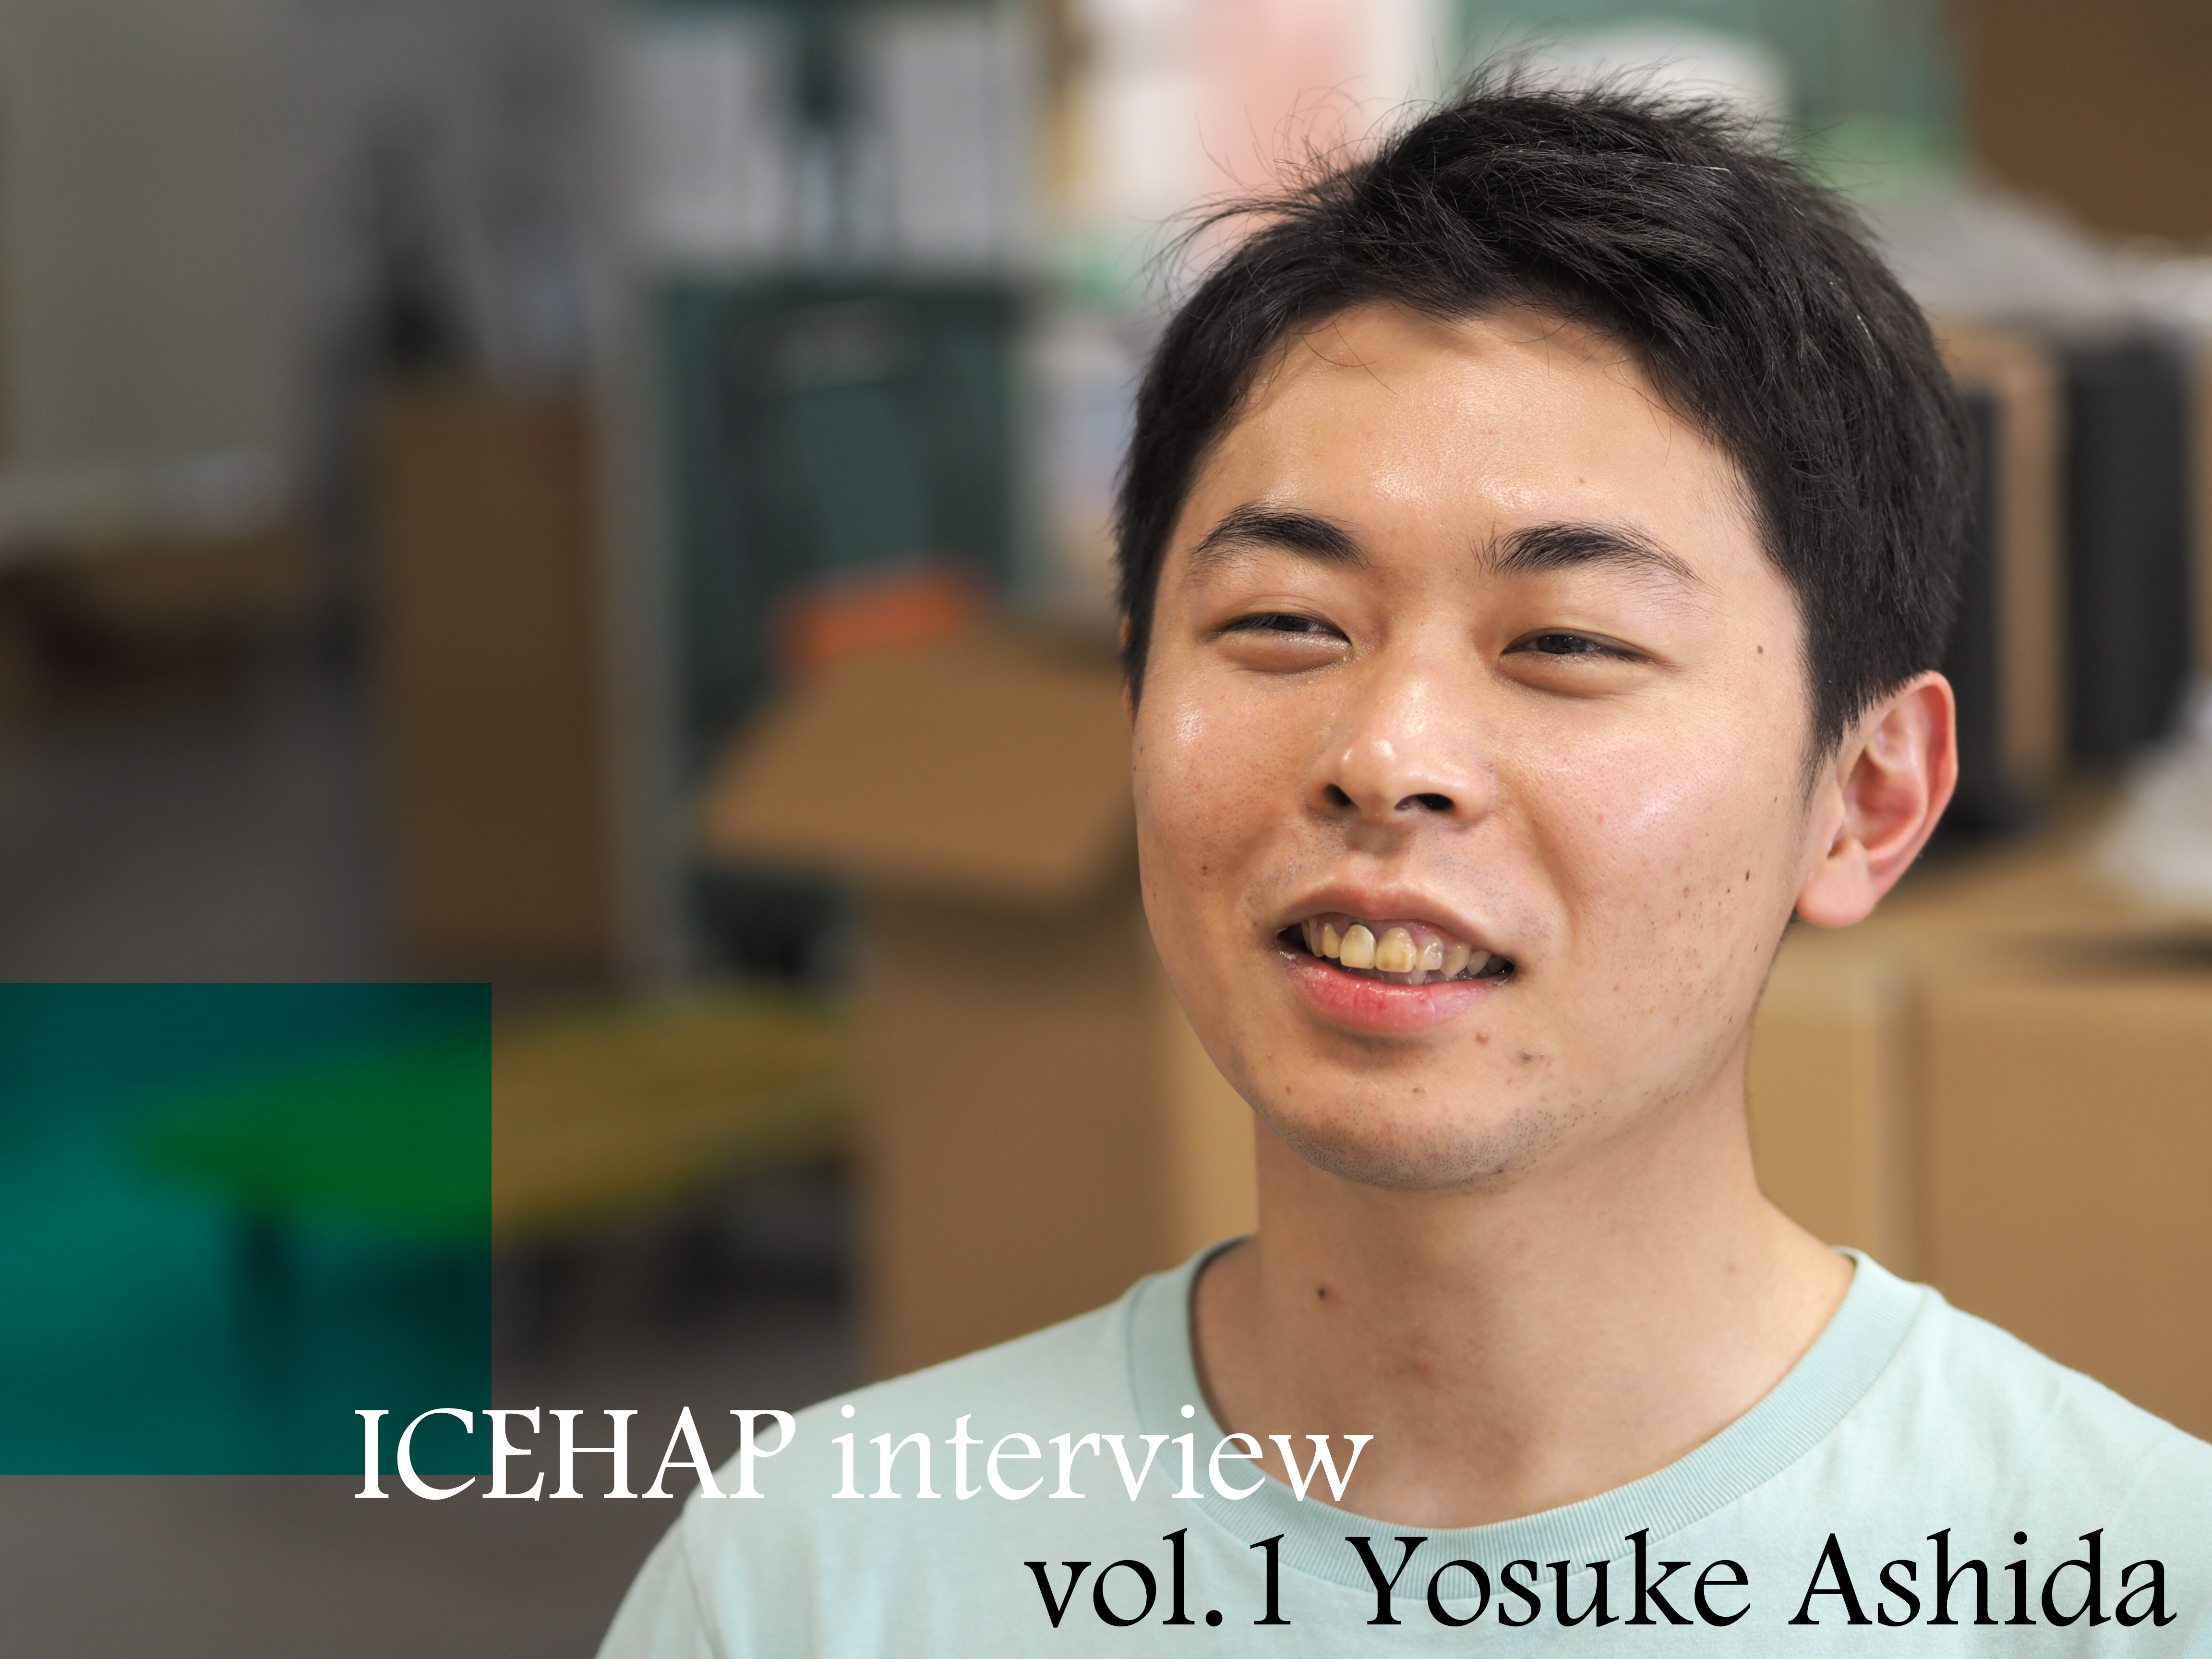 Yosuke Ashida